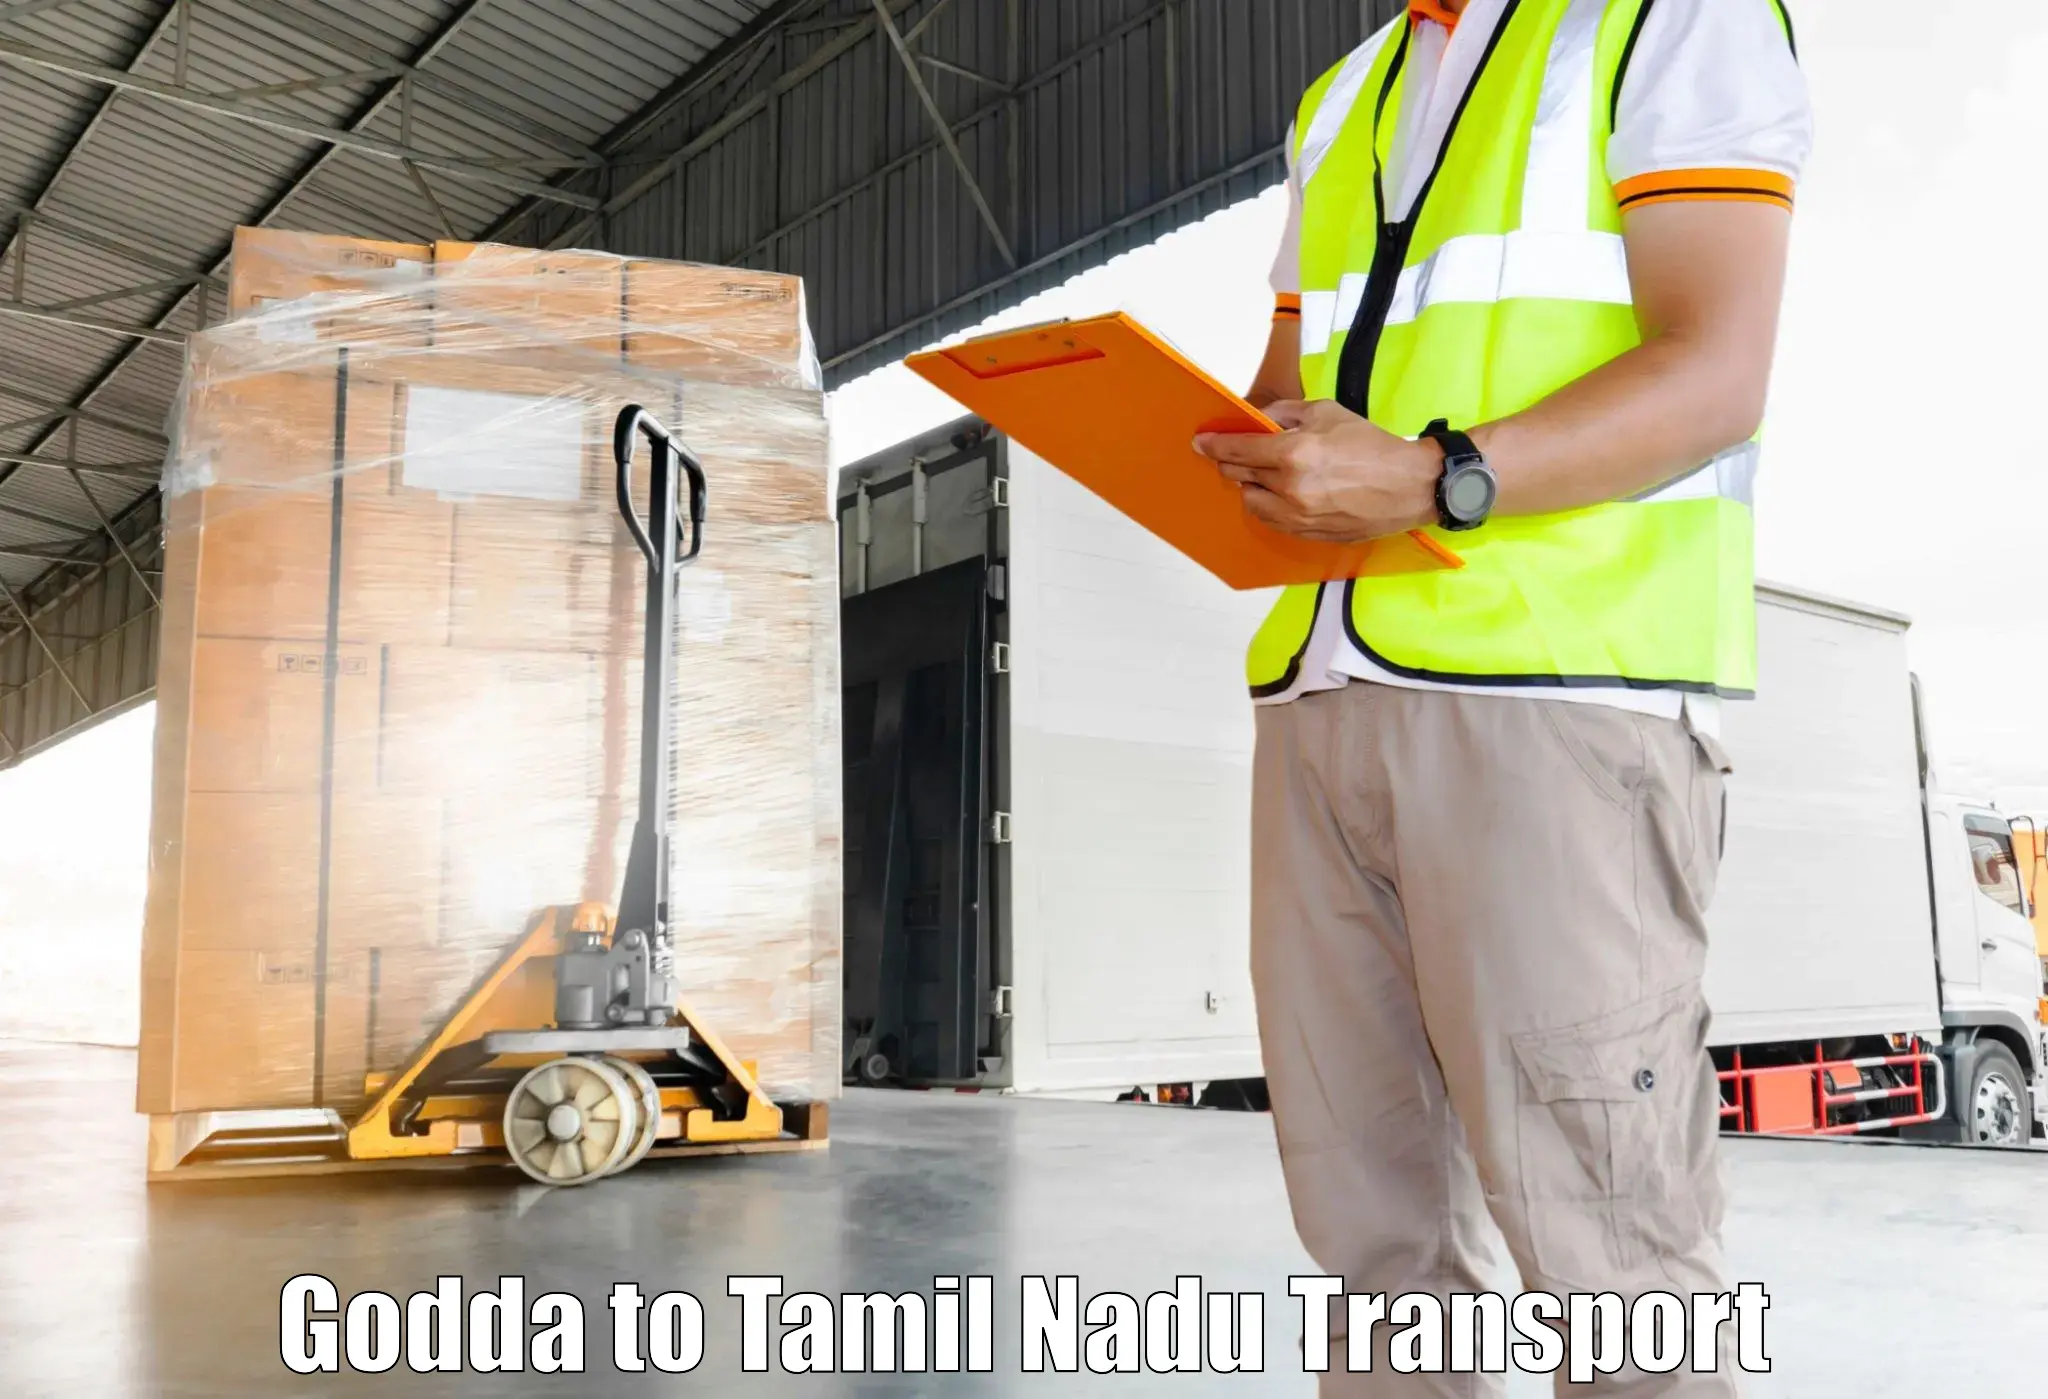 India truck logistics services Godda to Muthukulathur